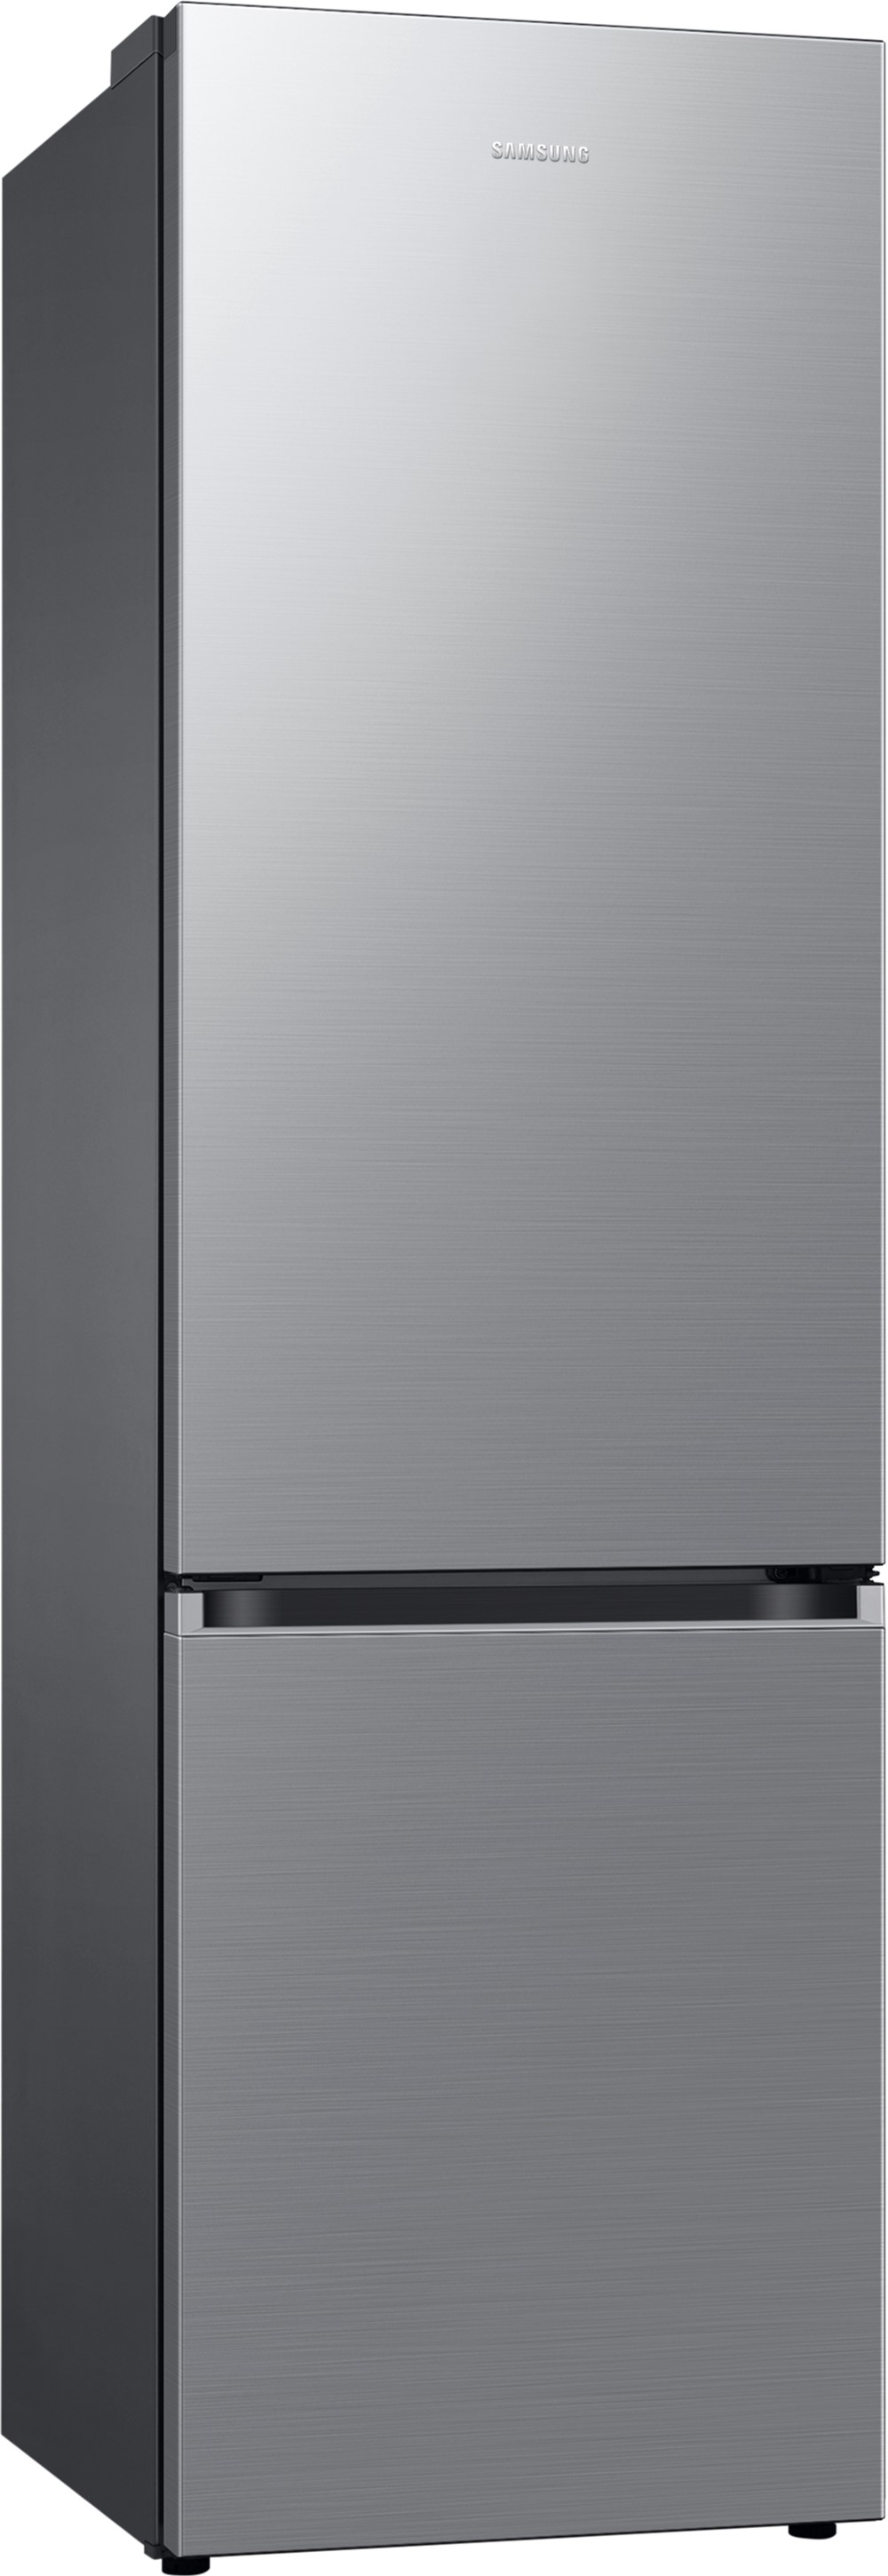 в продаже Холодильник Samsung RB38C600ES9/UA - фото 3